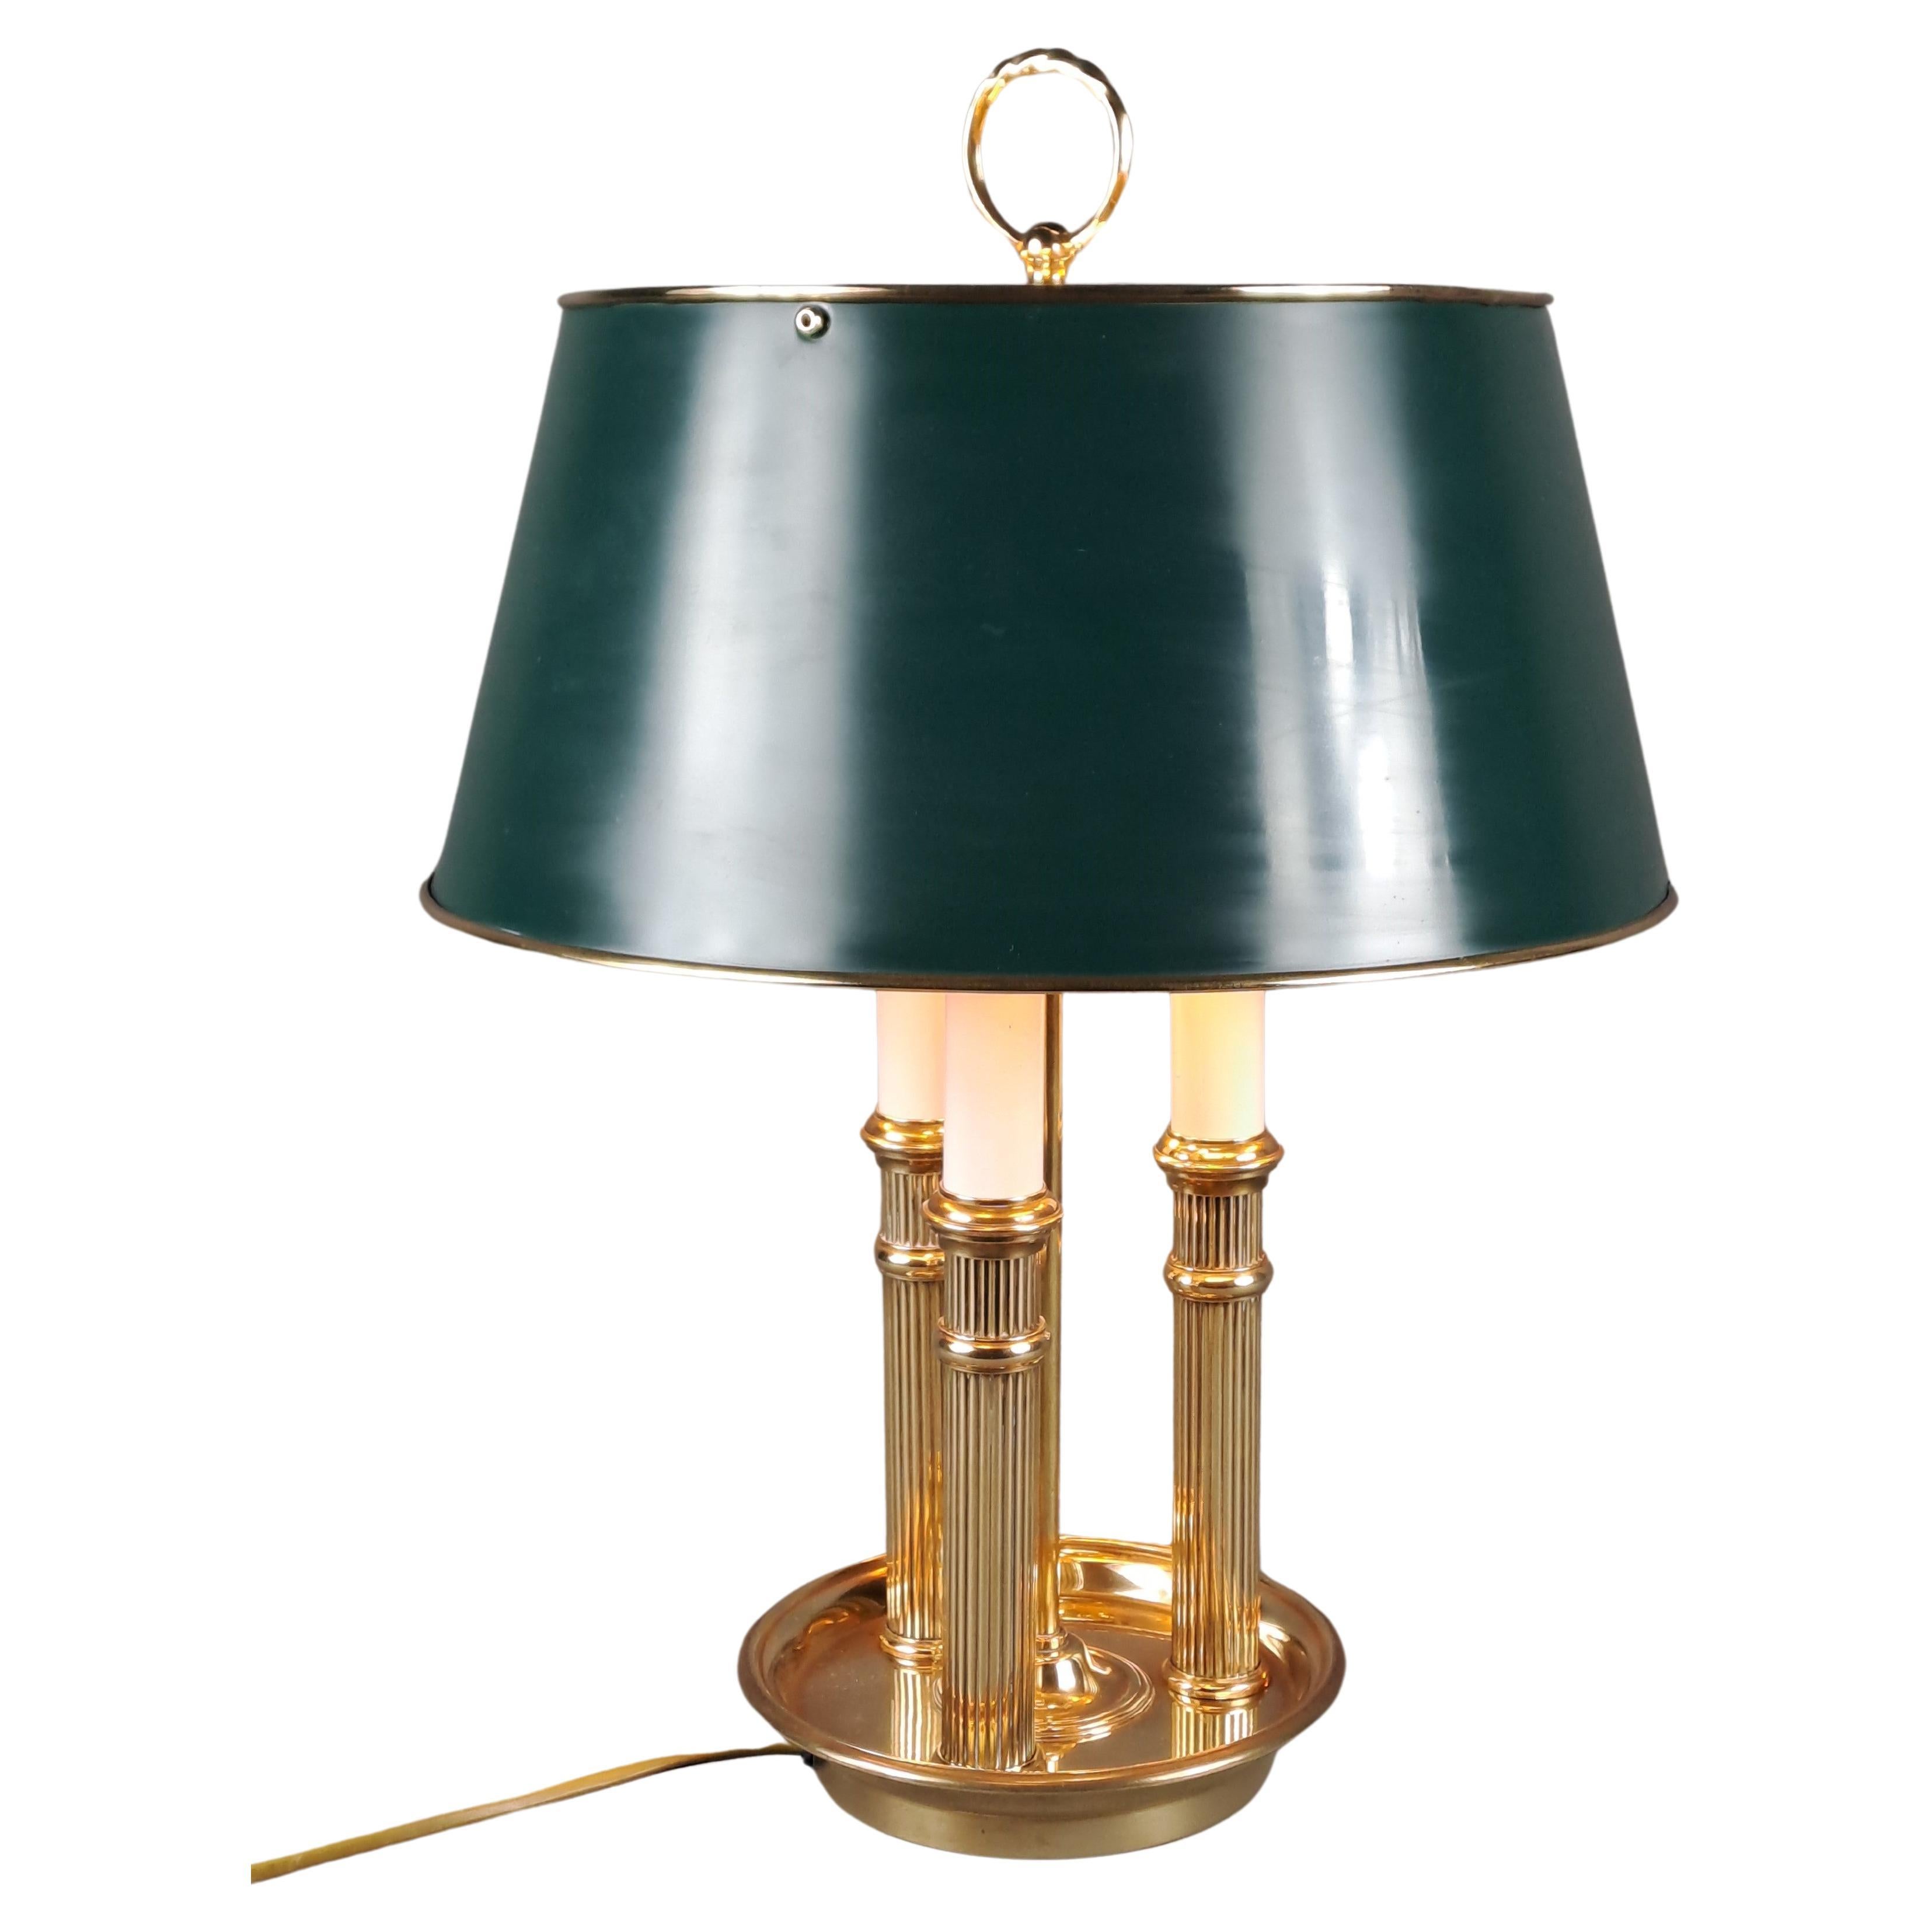 Lampe bouillotte de style Empire en bronze doré